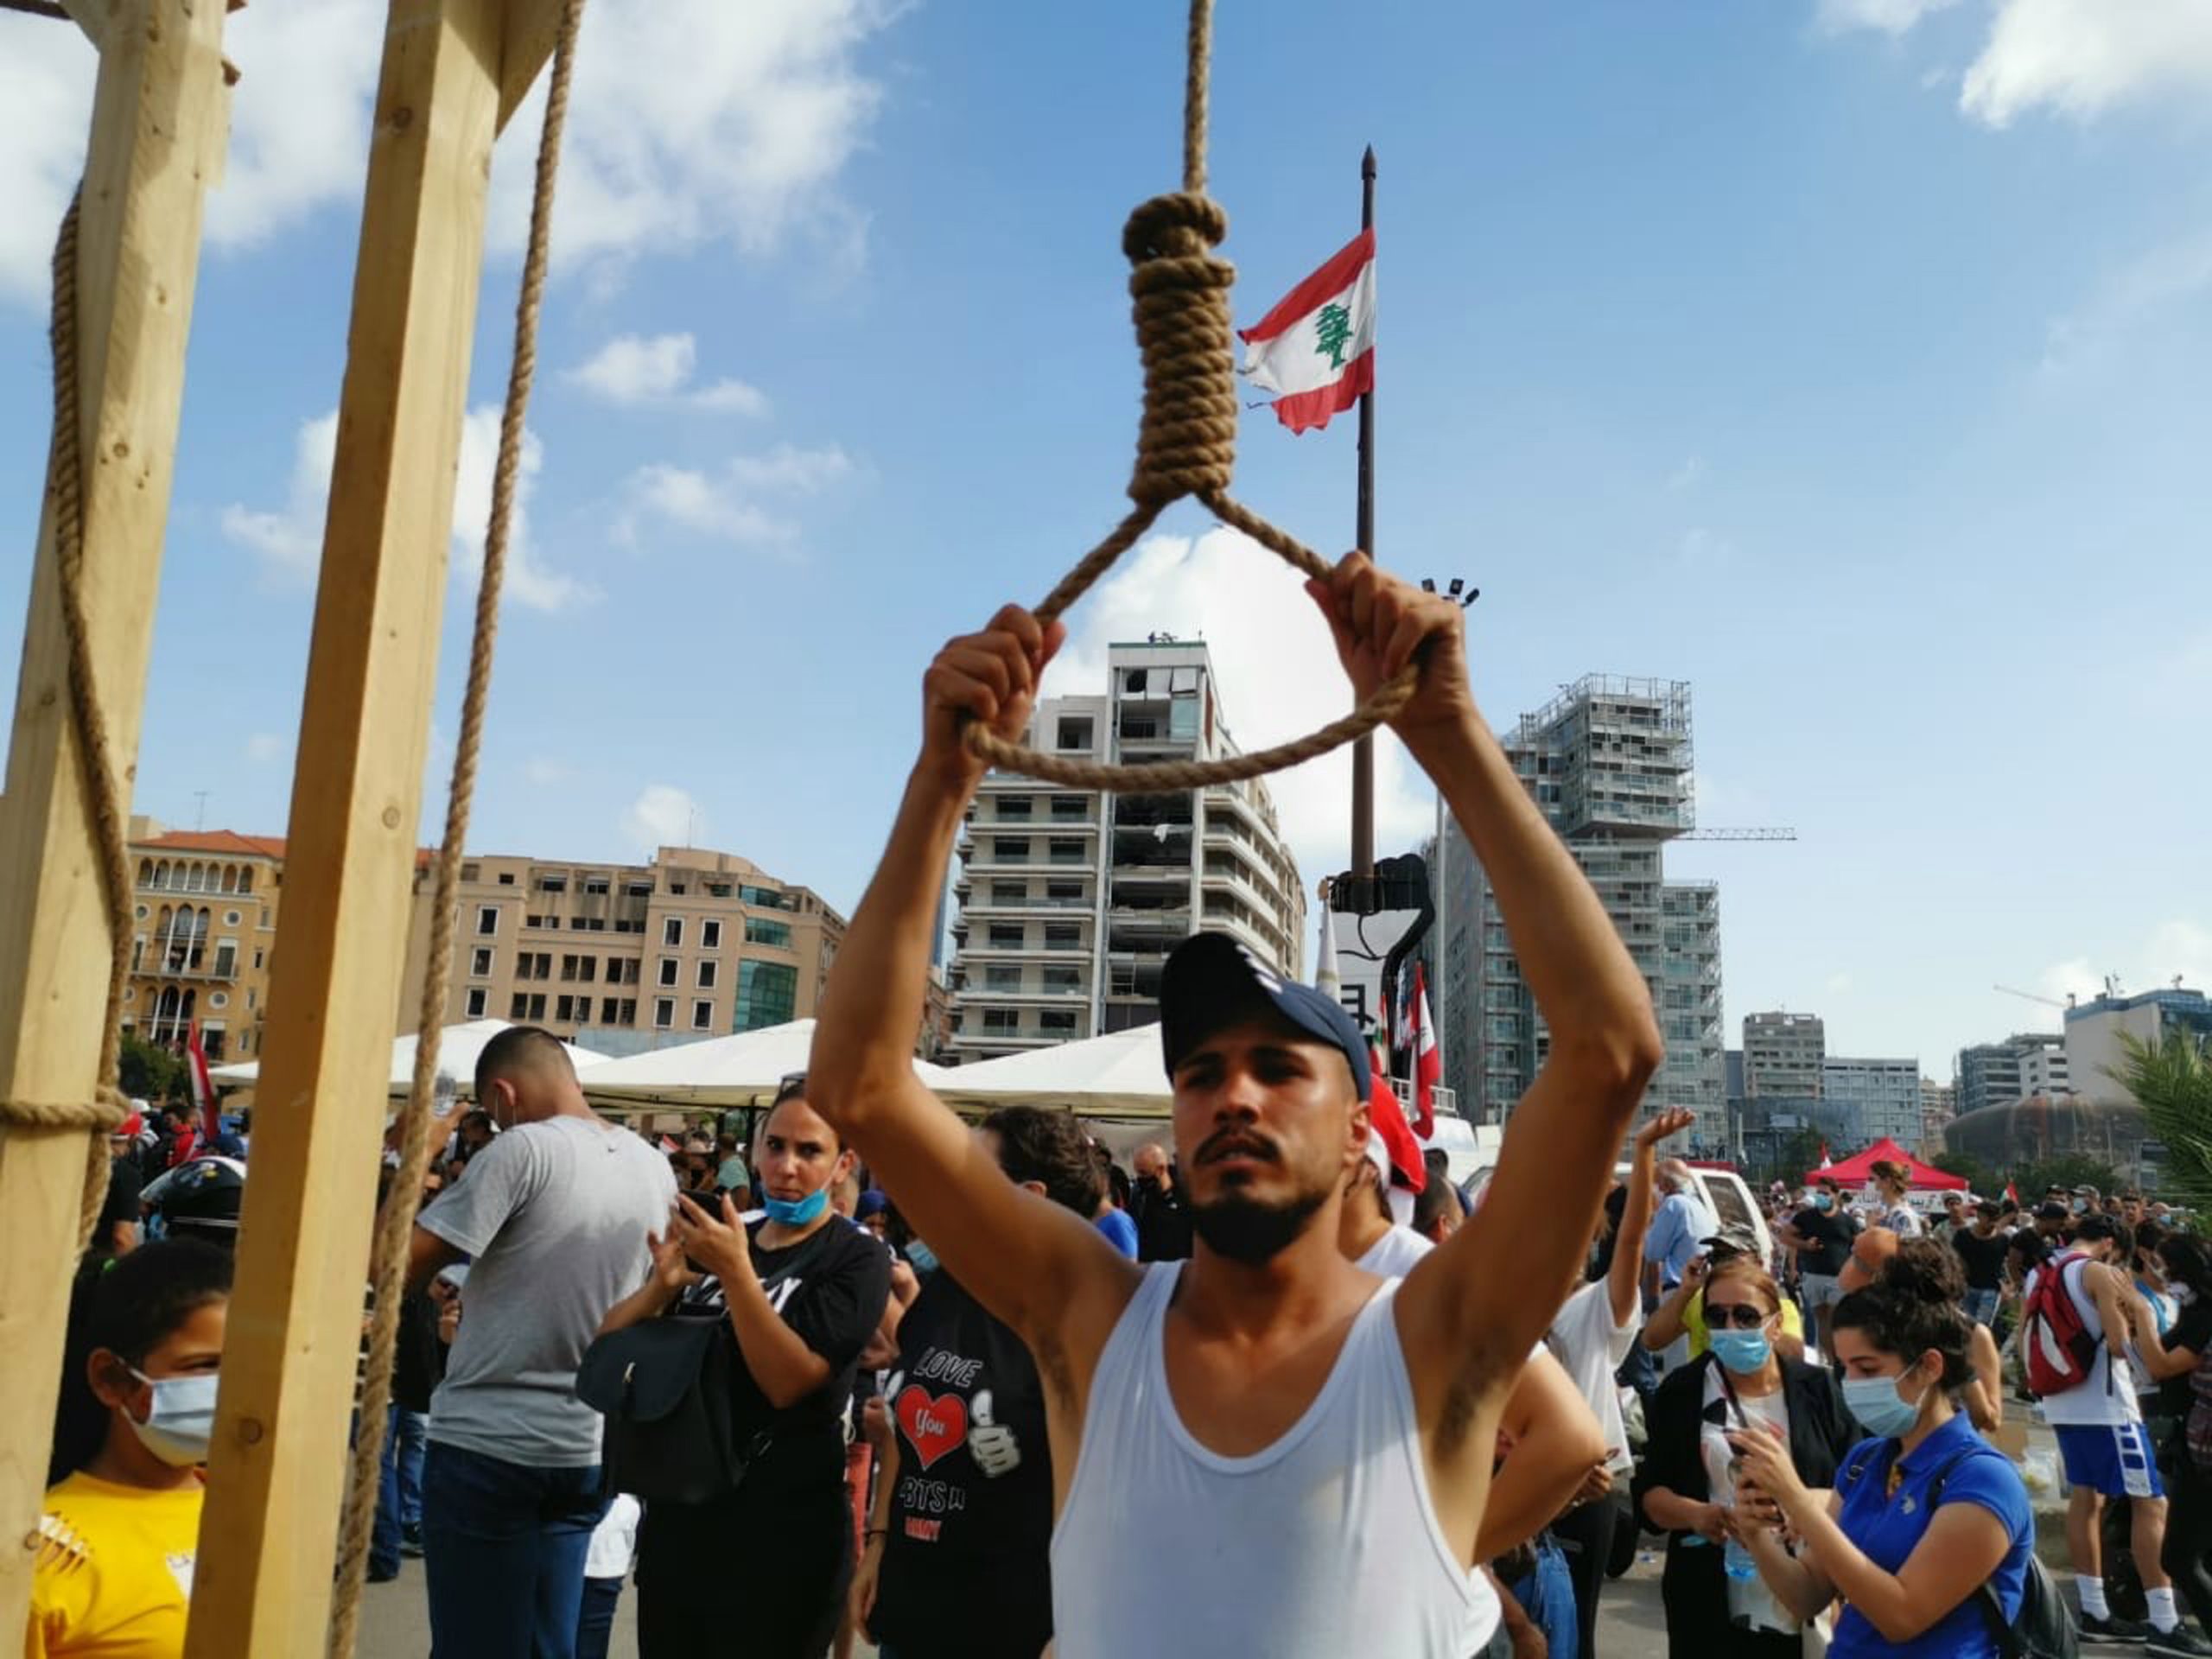 В центре площади они установили виселицу – как говорят, только в качестве шутки. Фото EPA/Nabil Mounzer